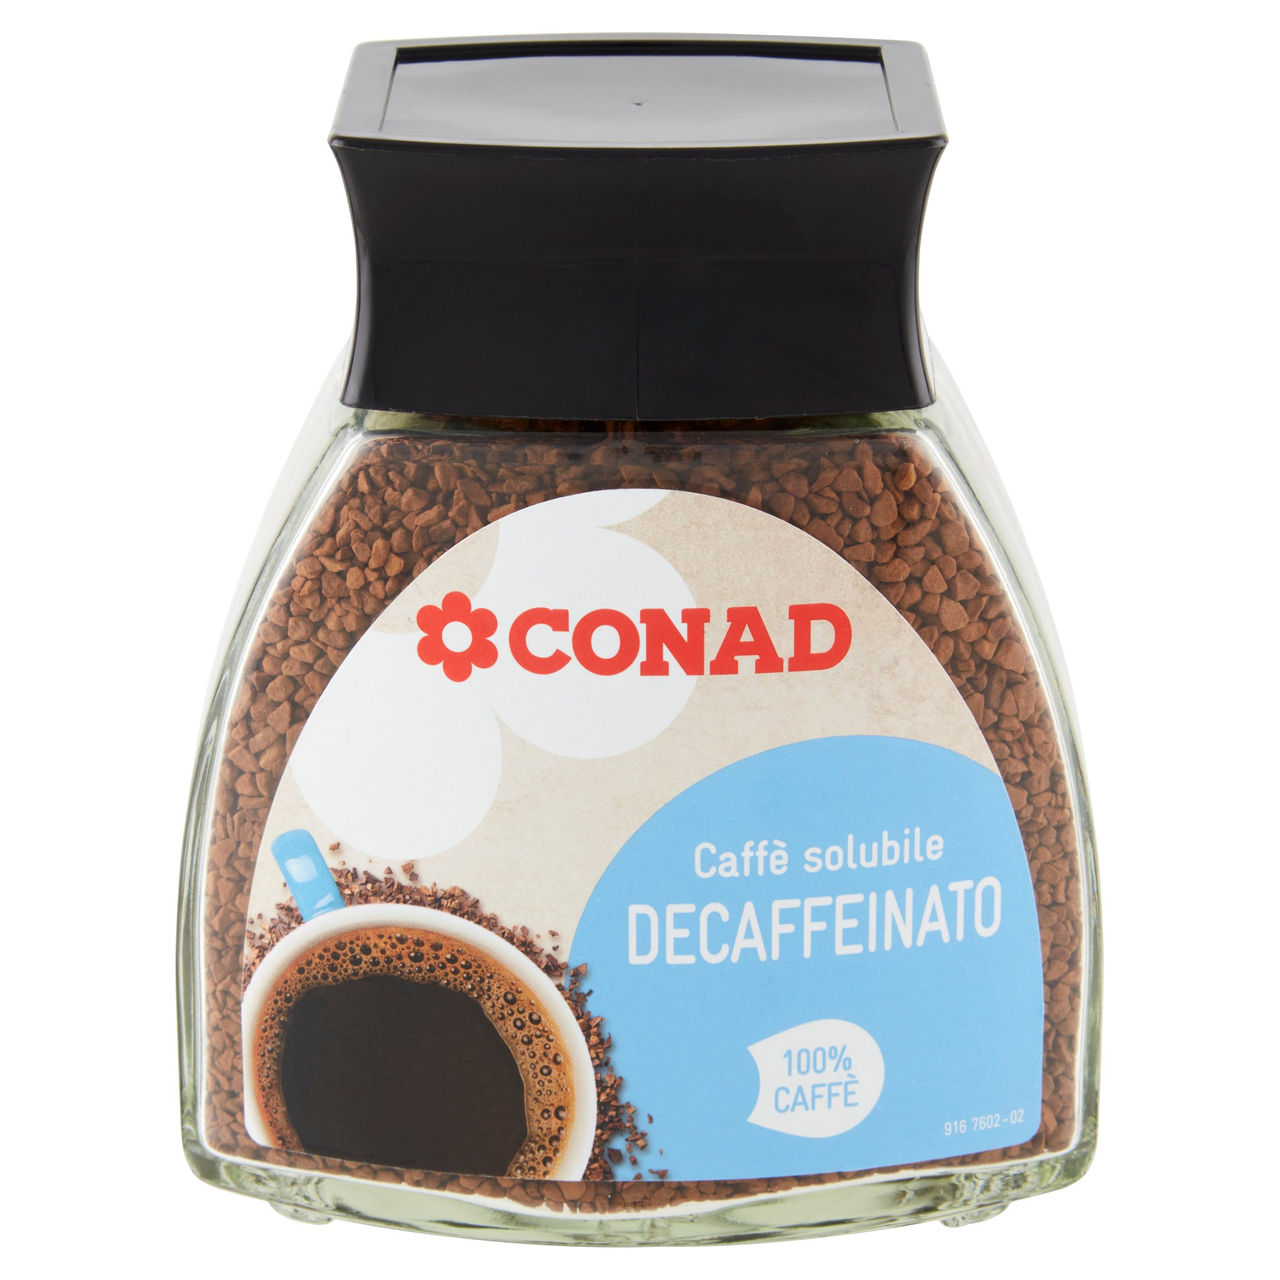 Caffè solubile decaffeinato Conad online